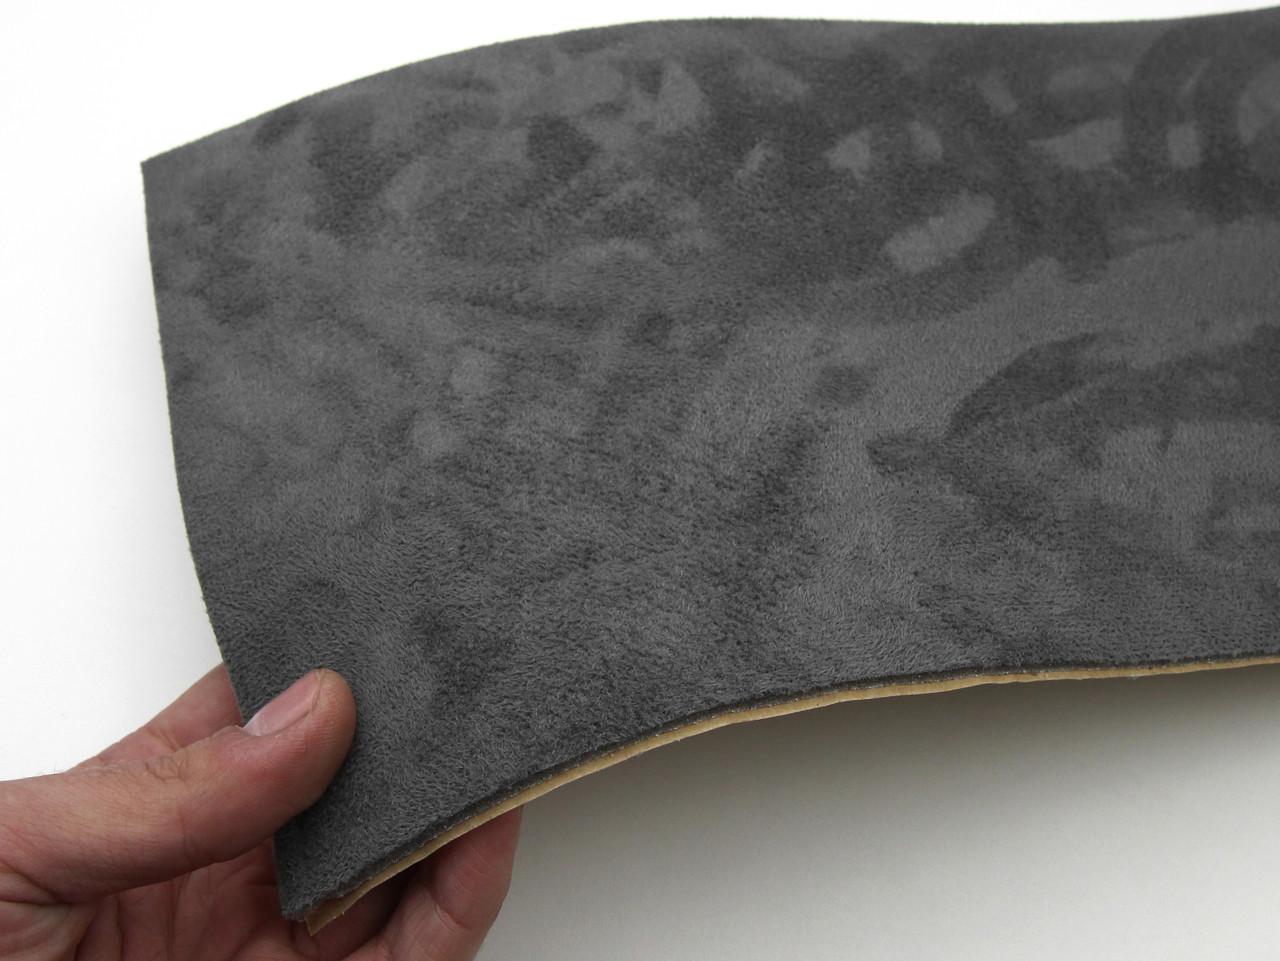 Автотканина самоклейка Антара, колір темно-сірий, на поролоні та сітці, товщина 4мм, лист, Туреччина детальна фотка